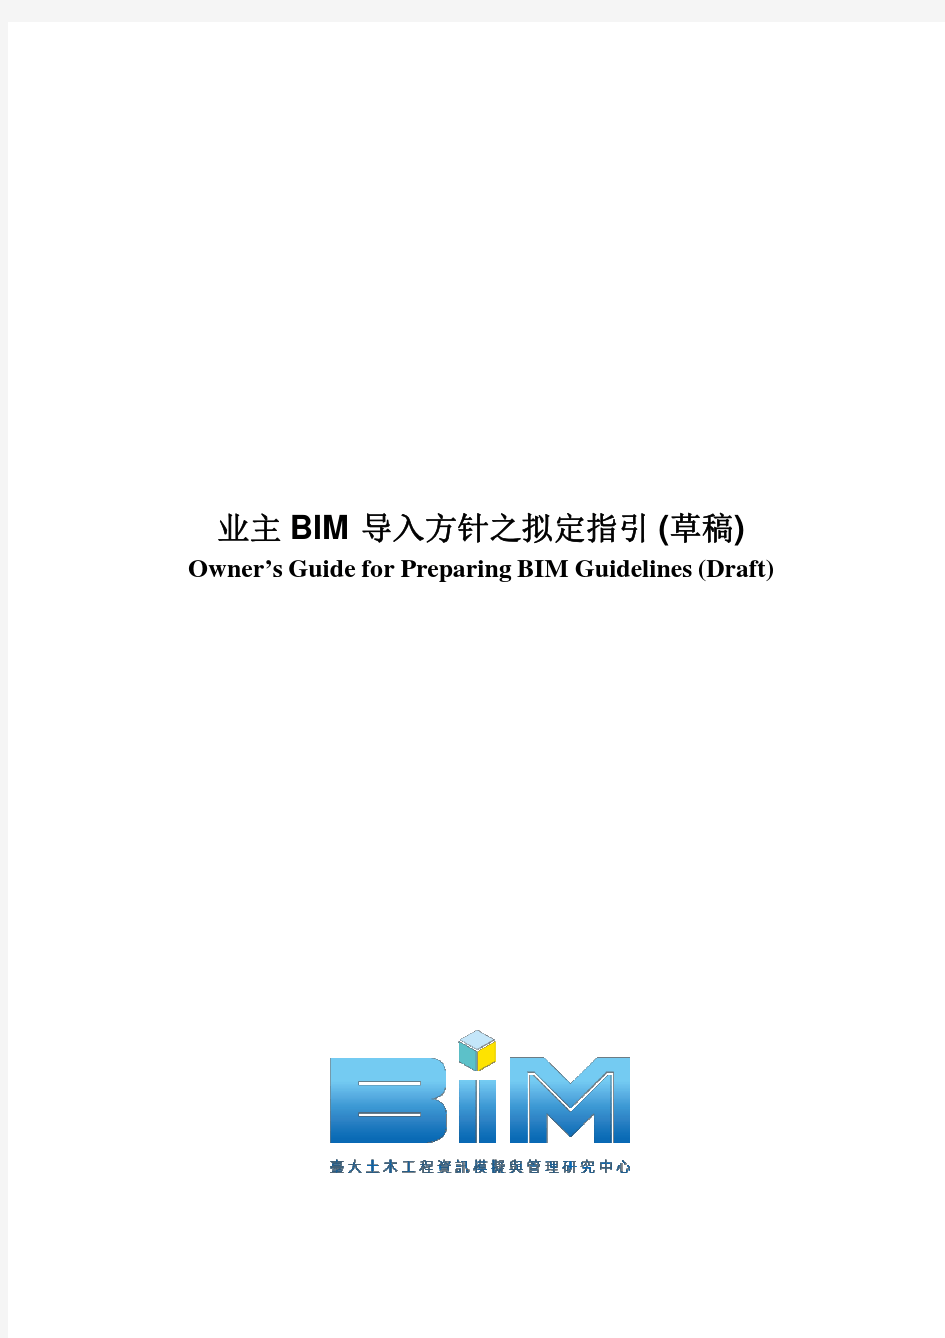 《业主BIM指南》草案(简体中文版)